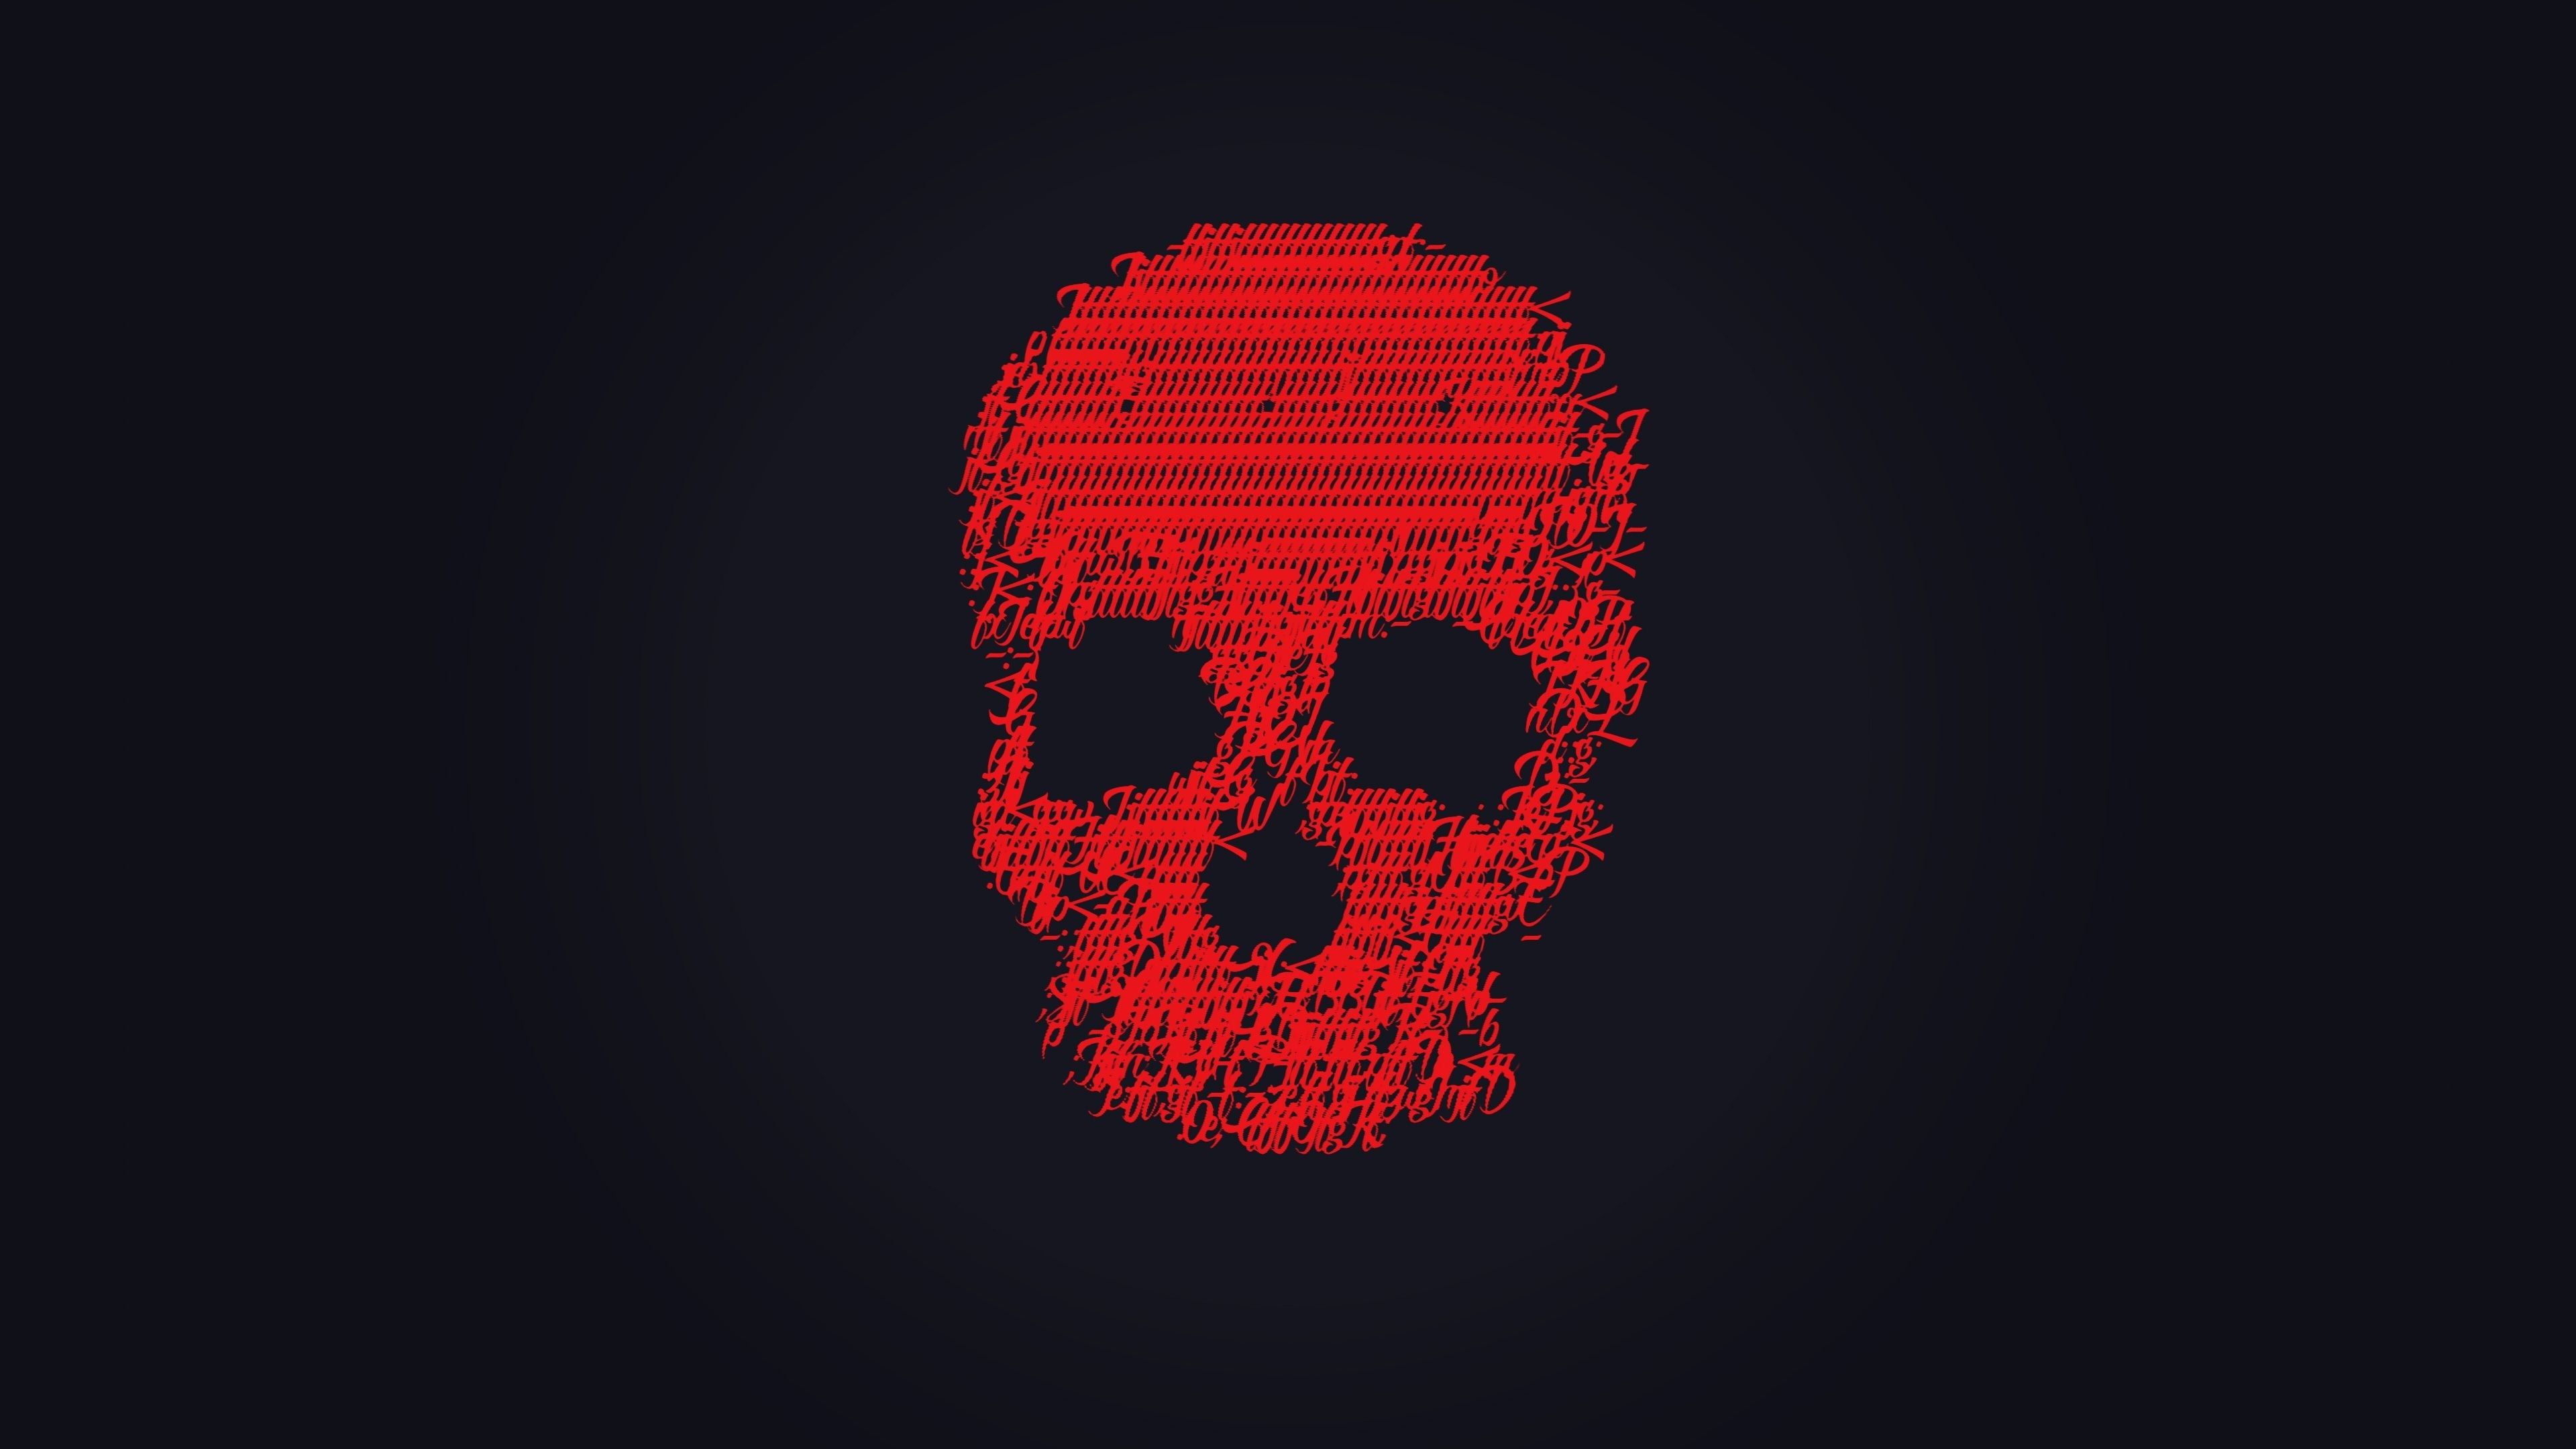 Red skull wallpaper - Skeleton, skull